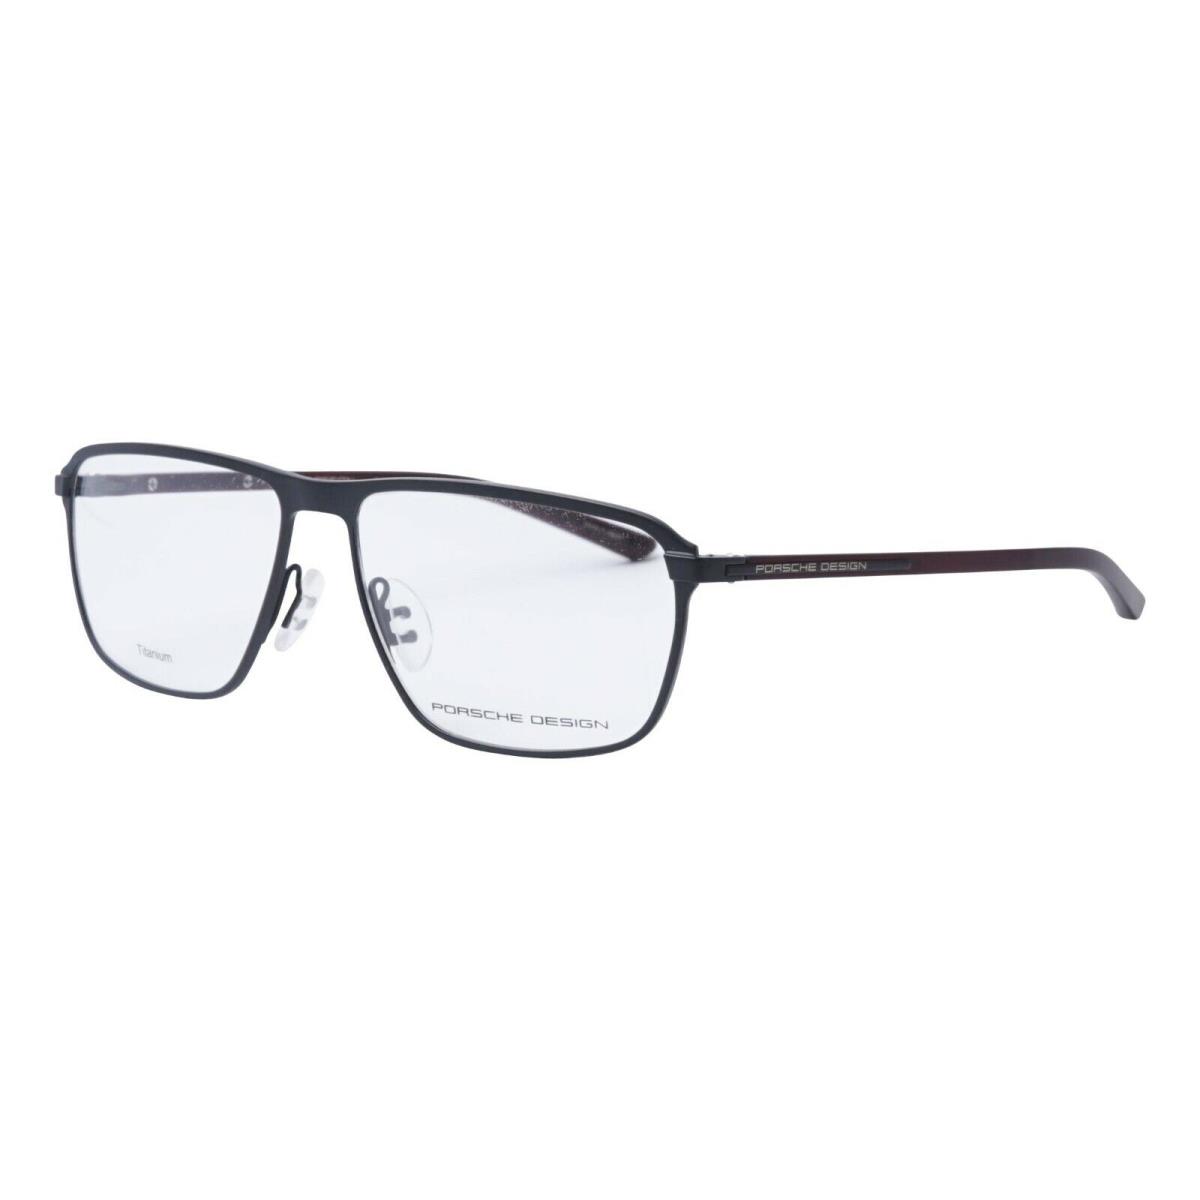 Porsche Design Eyeglasses P8285 Retail 4 Colors 56mm Black